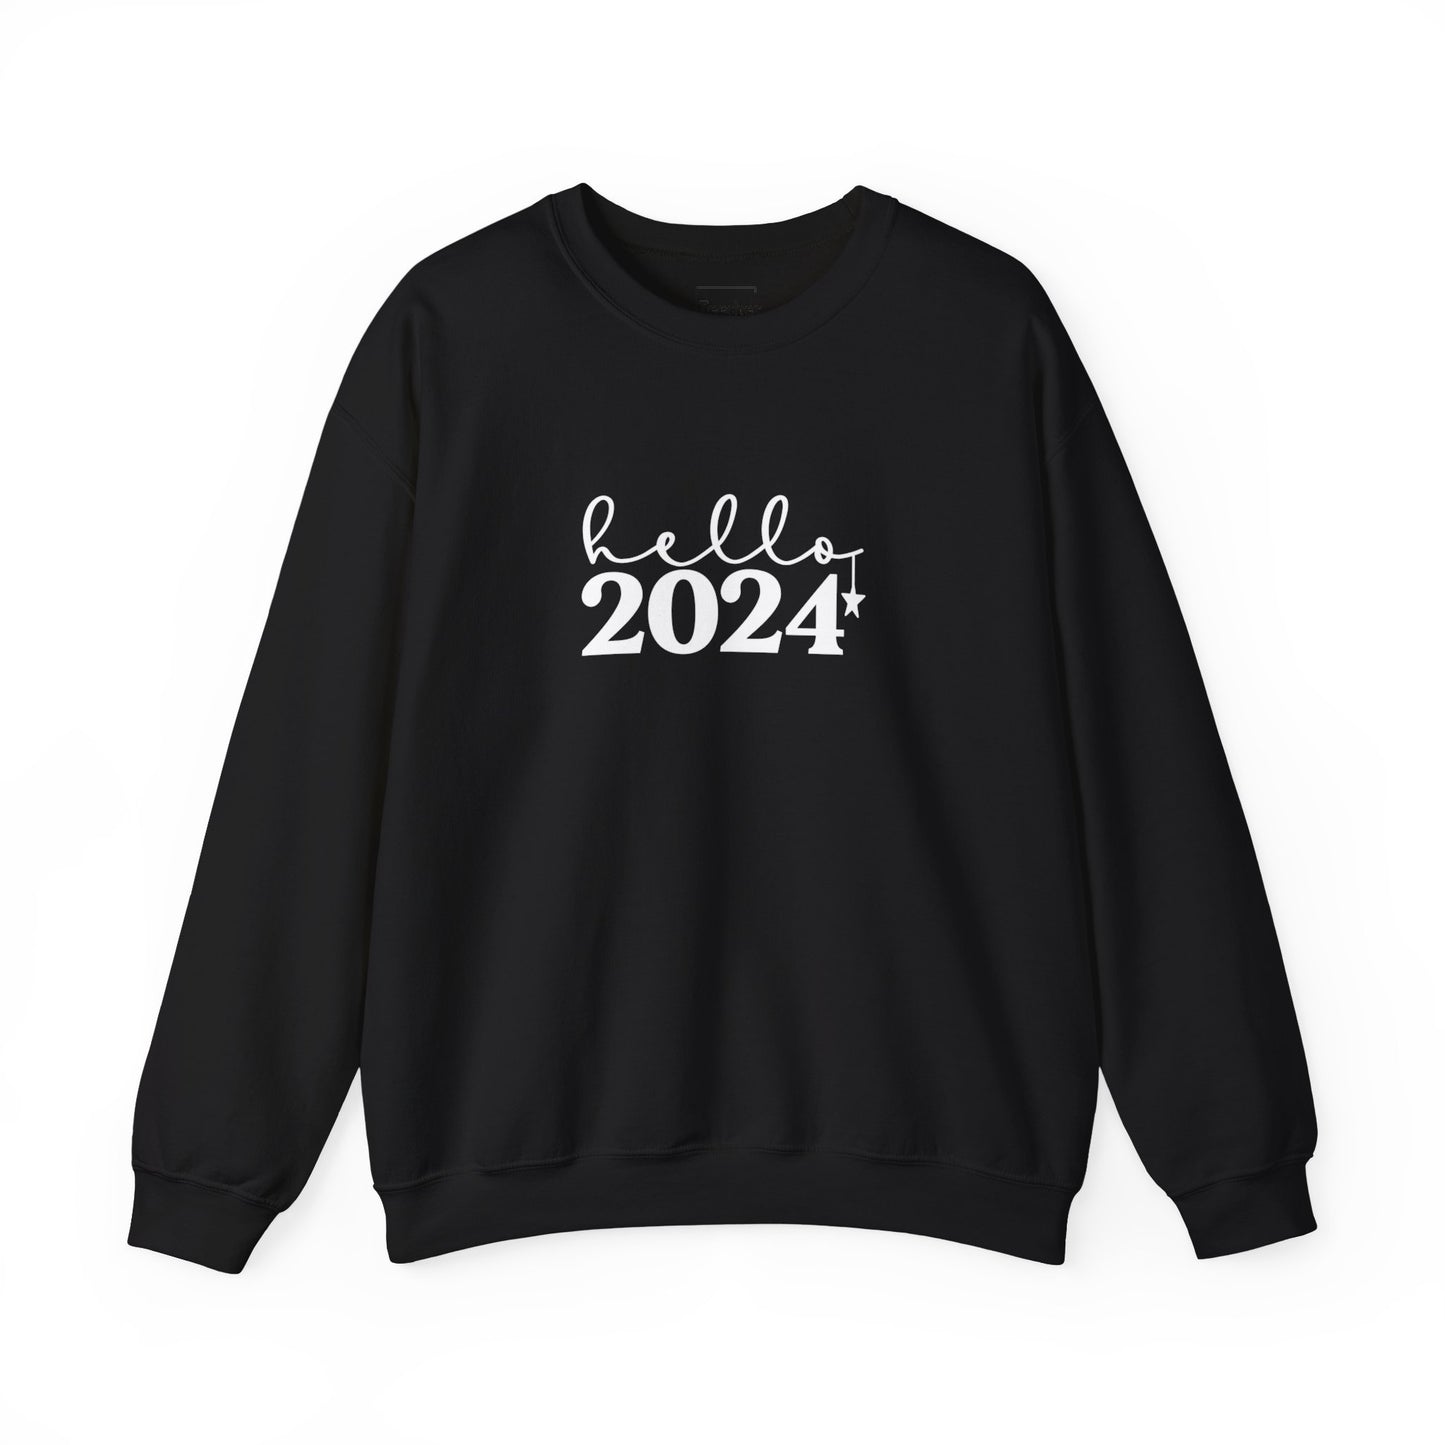 Hello 2024 Crewneck Sweatshirt